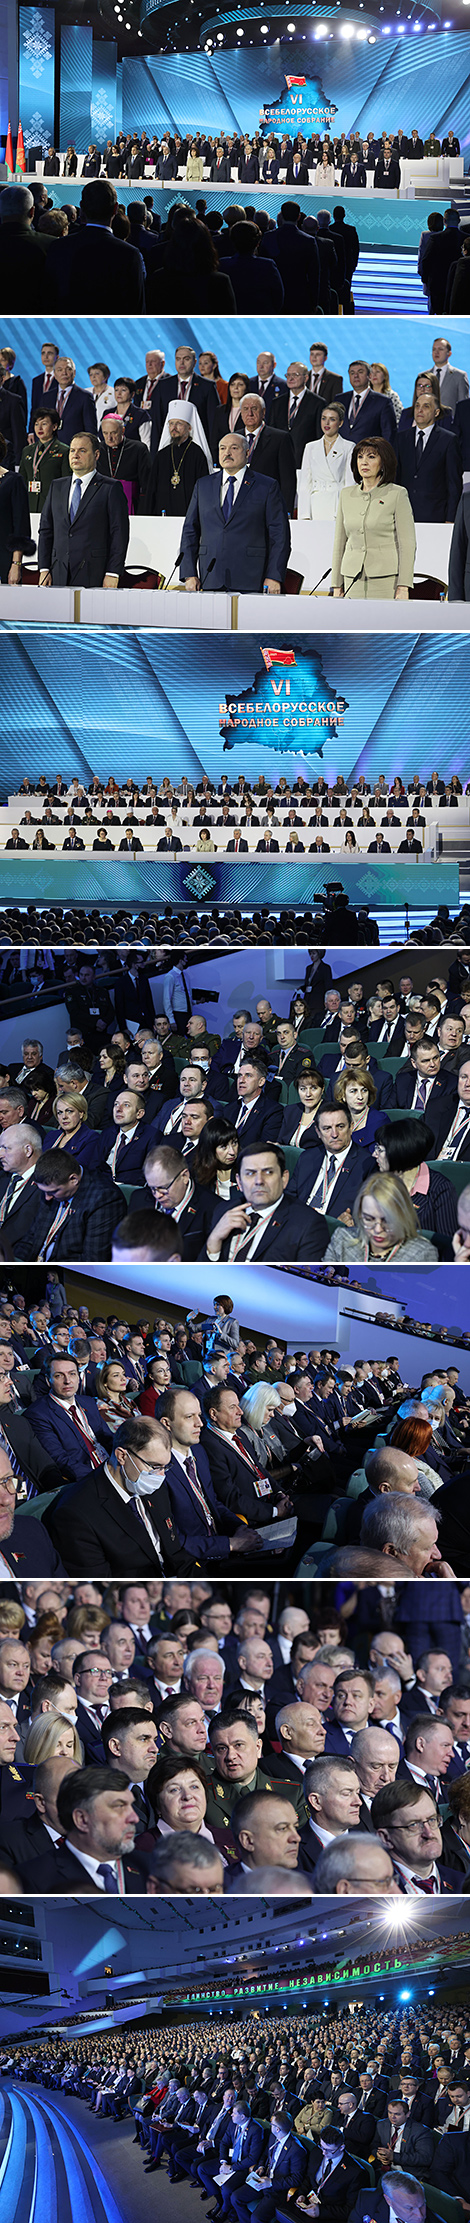 6th Belarusian People’s Congress kicks off in Minsk